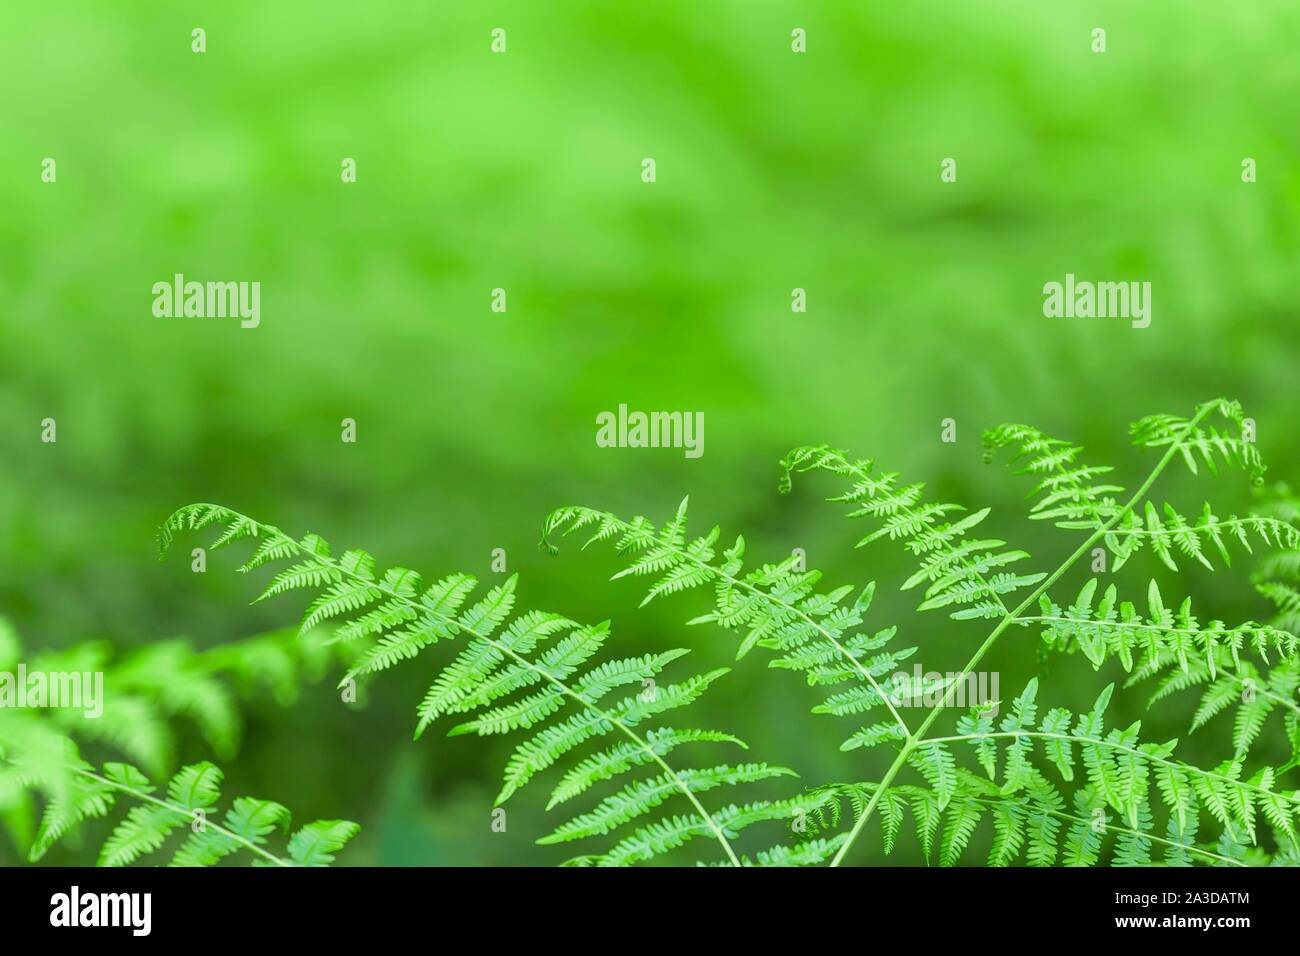 Bracken fern background, green fern leaf texture Stock Photo